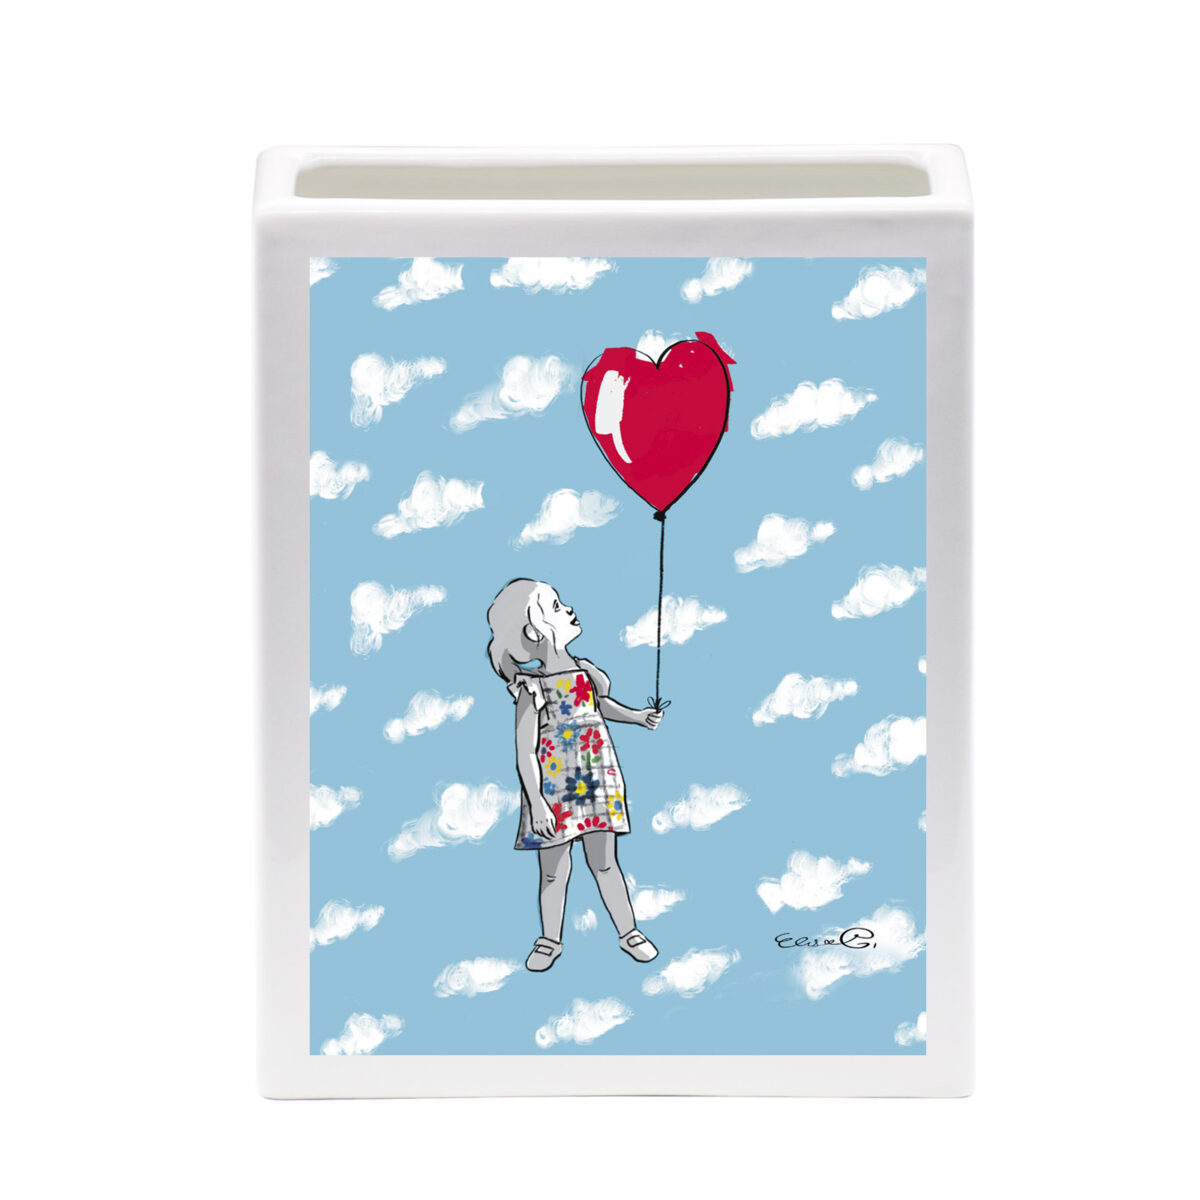 vaso bianco, rettangolare lungo, con l'immagine di un cielo azzurro pieno di nuvolette bianche tra le quali è disegnata una bambina che guarda un palloncino a forma di cuore rosso che tiene in mano